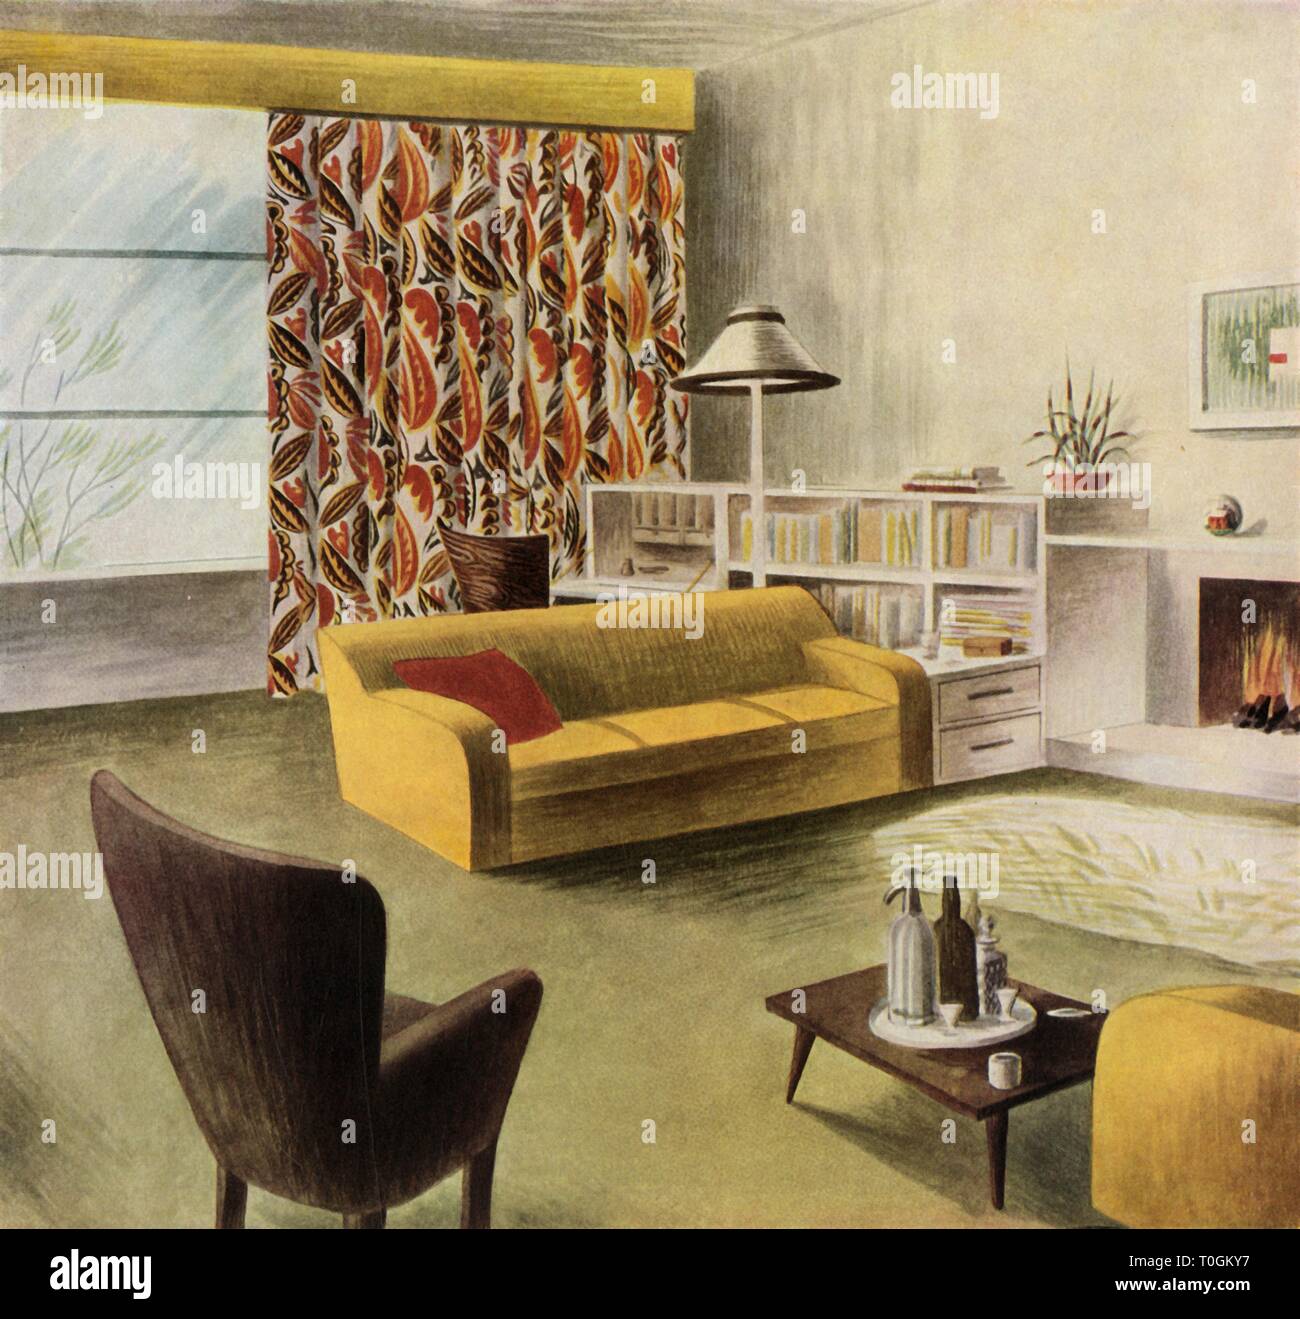 40er Jahre style Wohnzimmer mit gemusterten Sofa und eine furnierte  Couchtisch Stockfotografie - Alamy